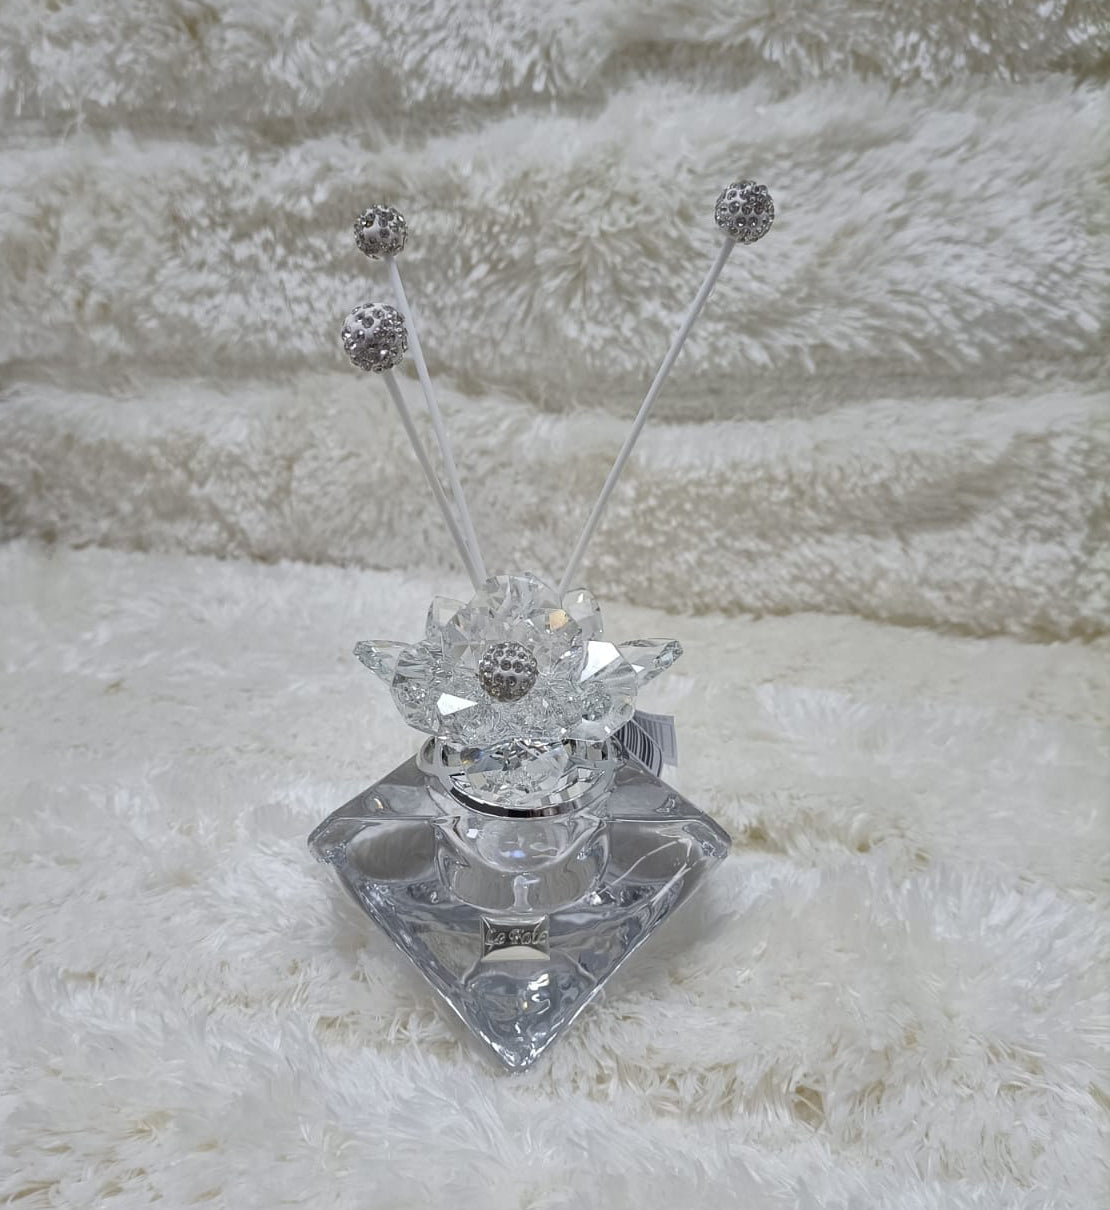 Profumatore Fate di Cristallo Diamante con Fiore Swarovski e Pistillo Ceramica Matrimonio